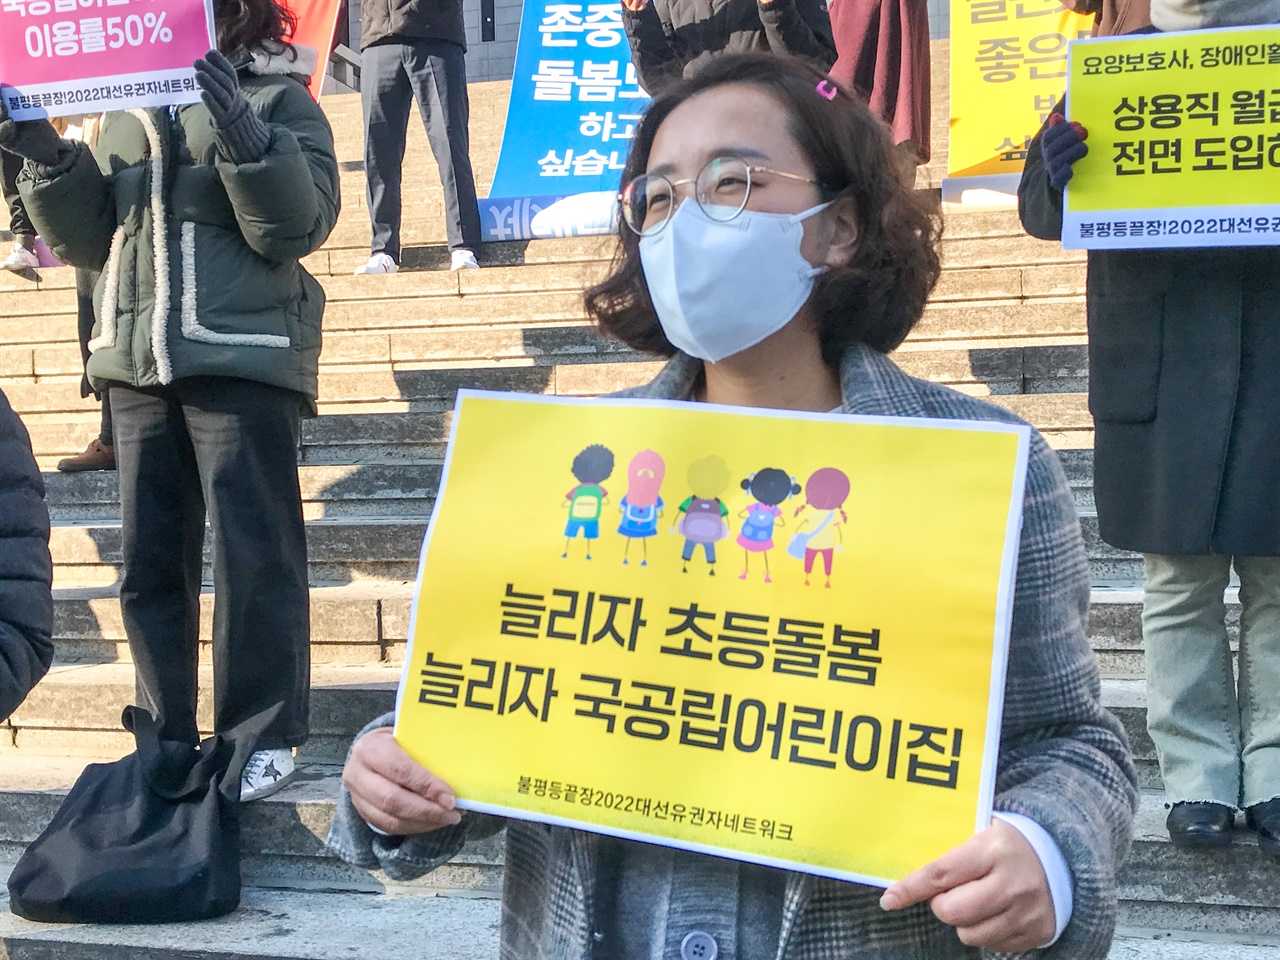 2021년 12월 8일 10시 세종문화회관 앞 계단, 2022 대선넷 시민이 요구하는 돌봄 정책 제안.

